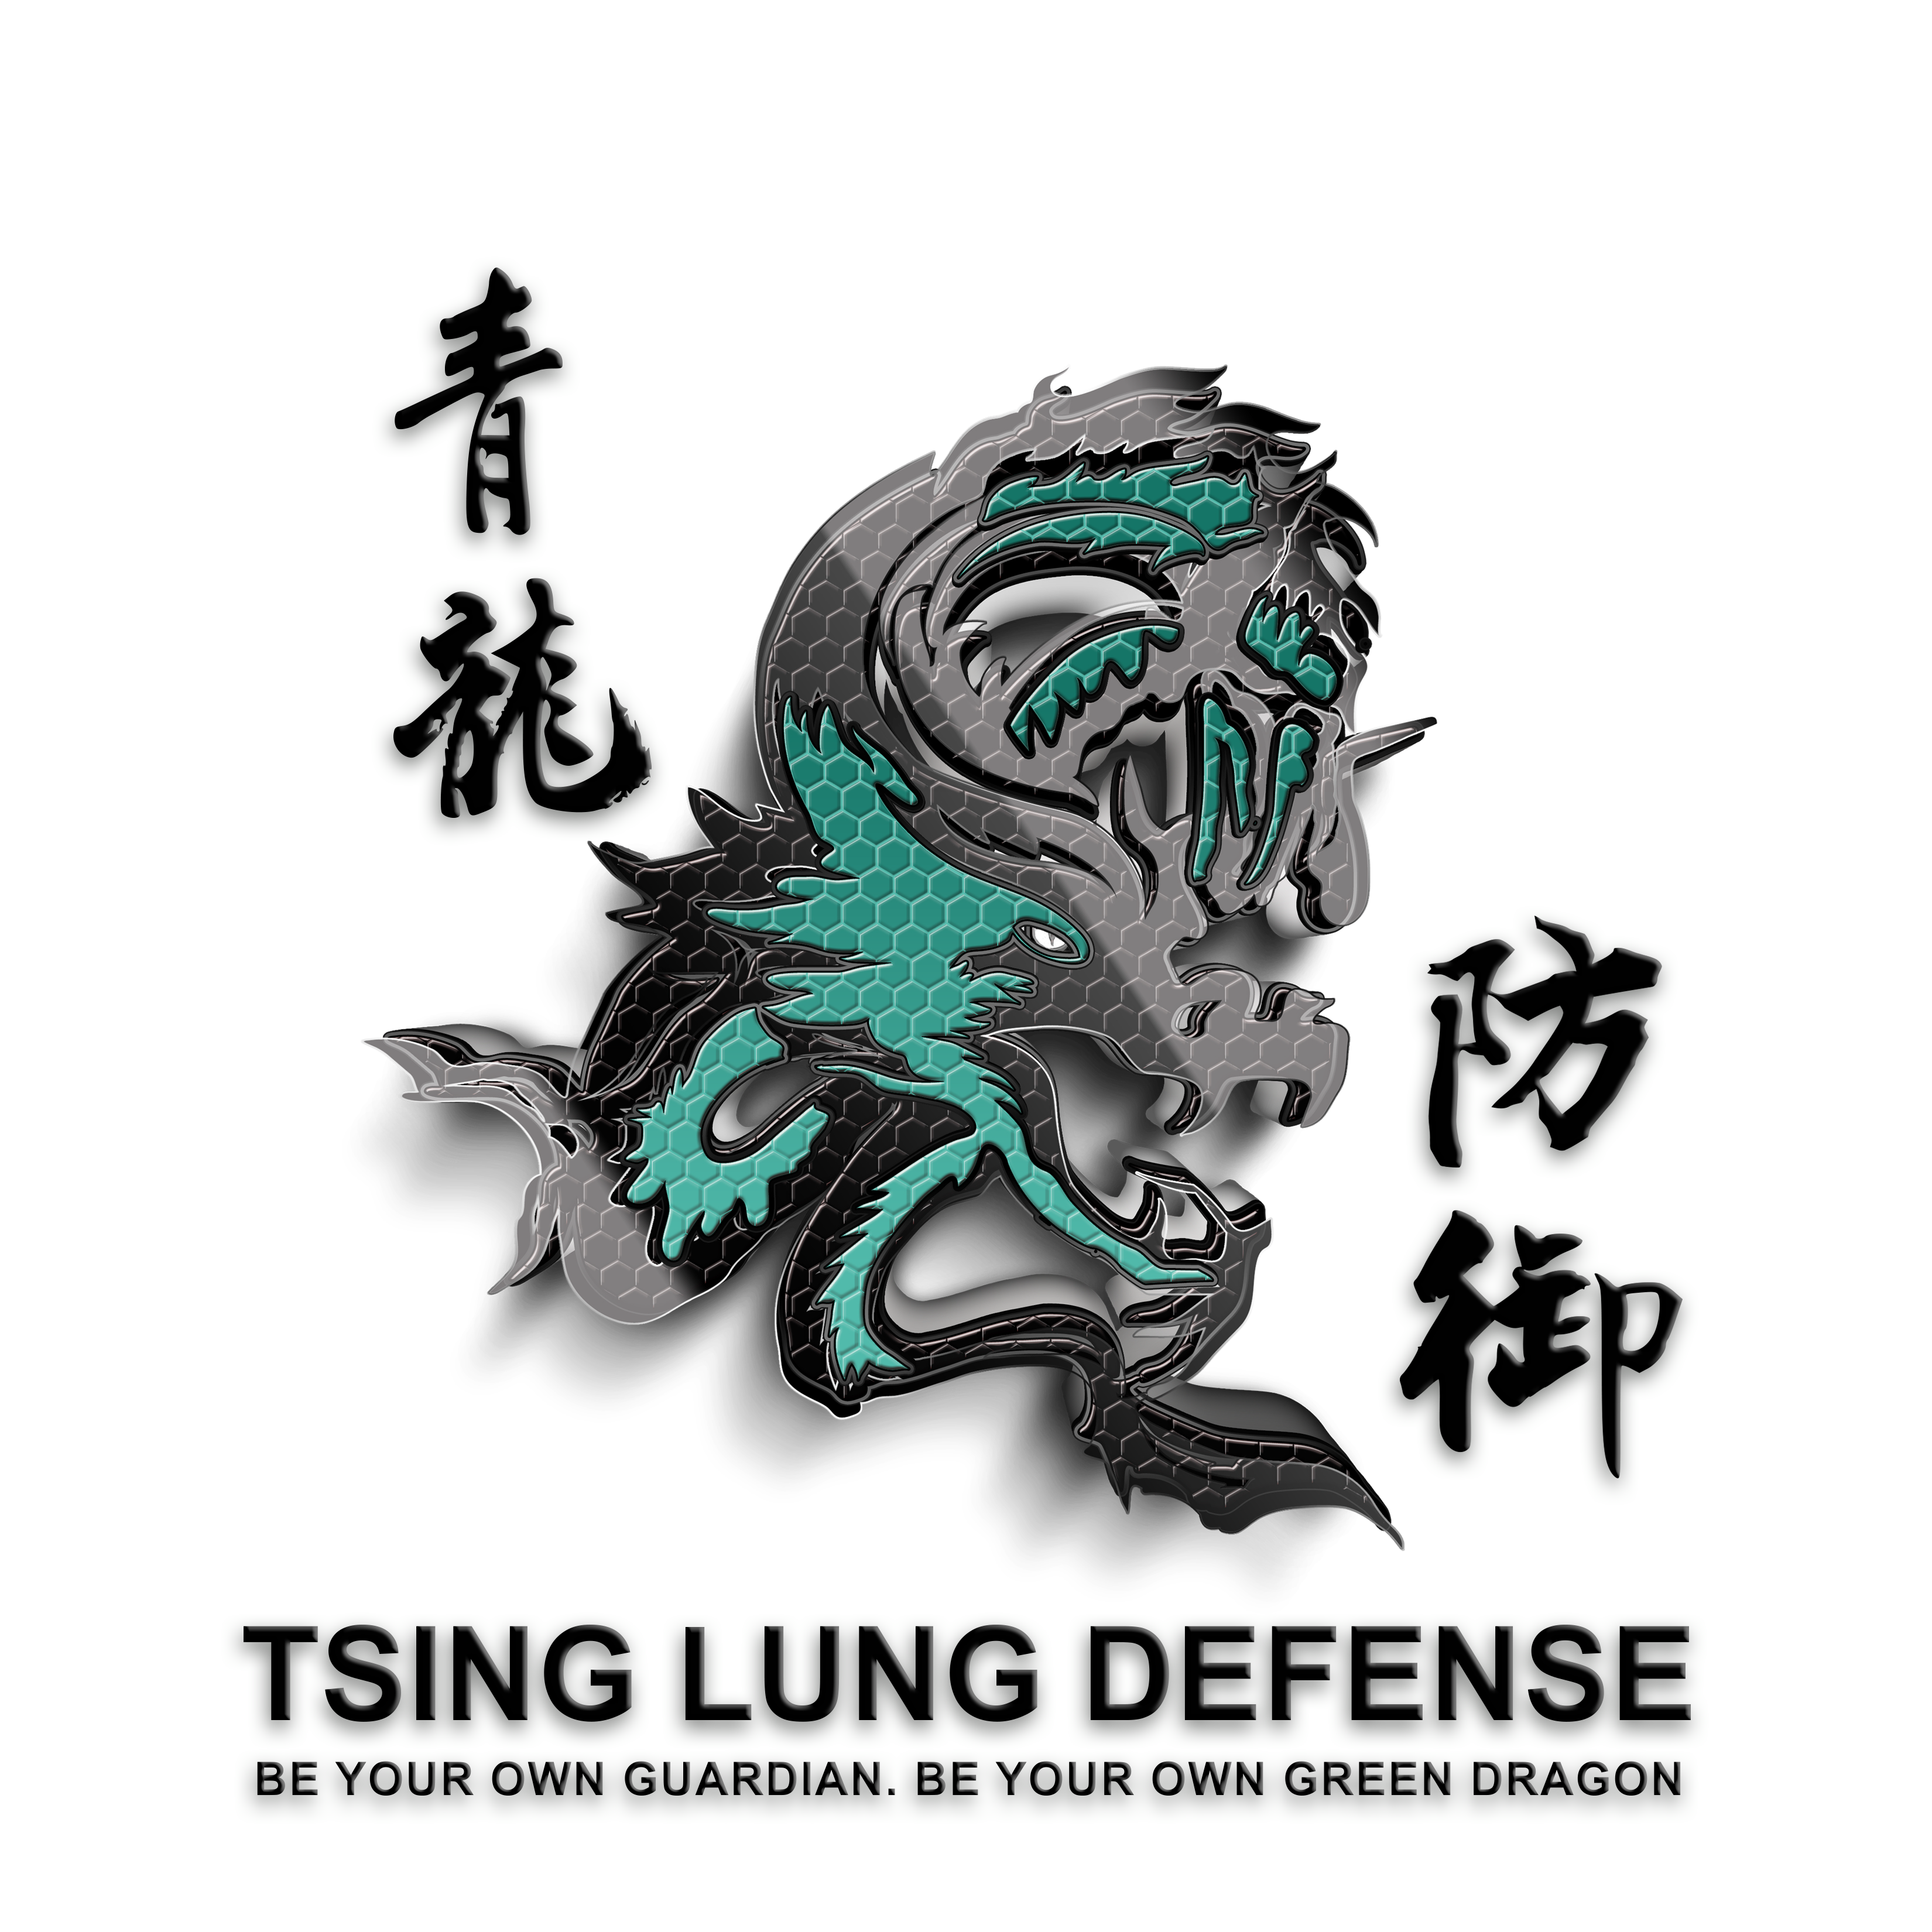 Tsing Lung Defense